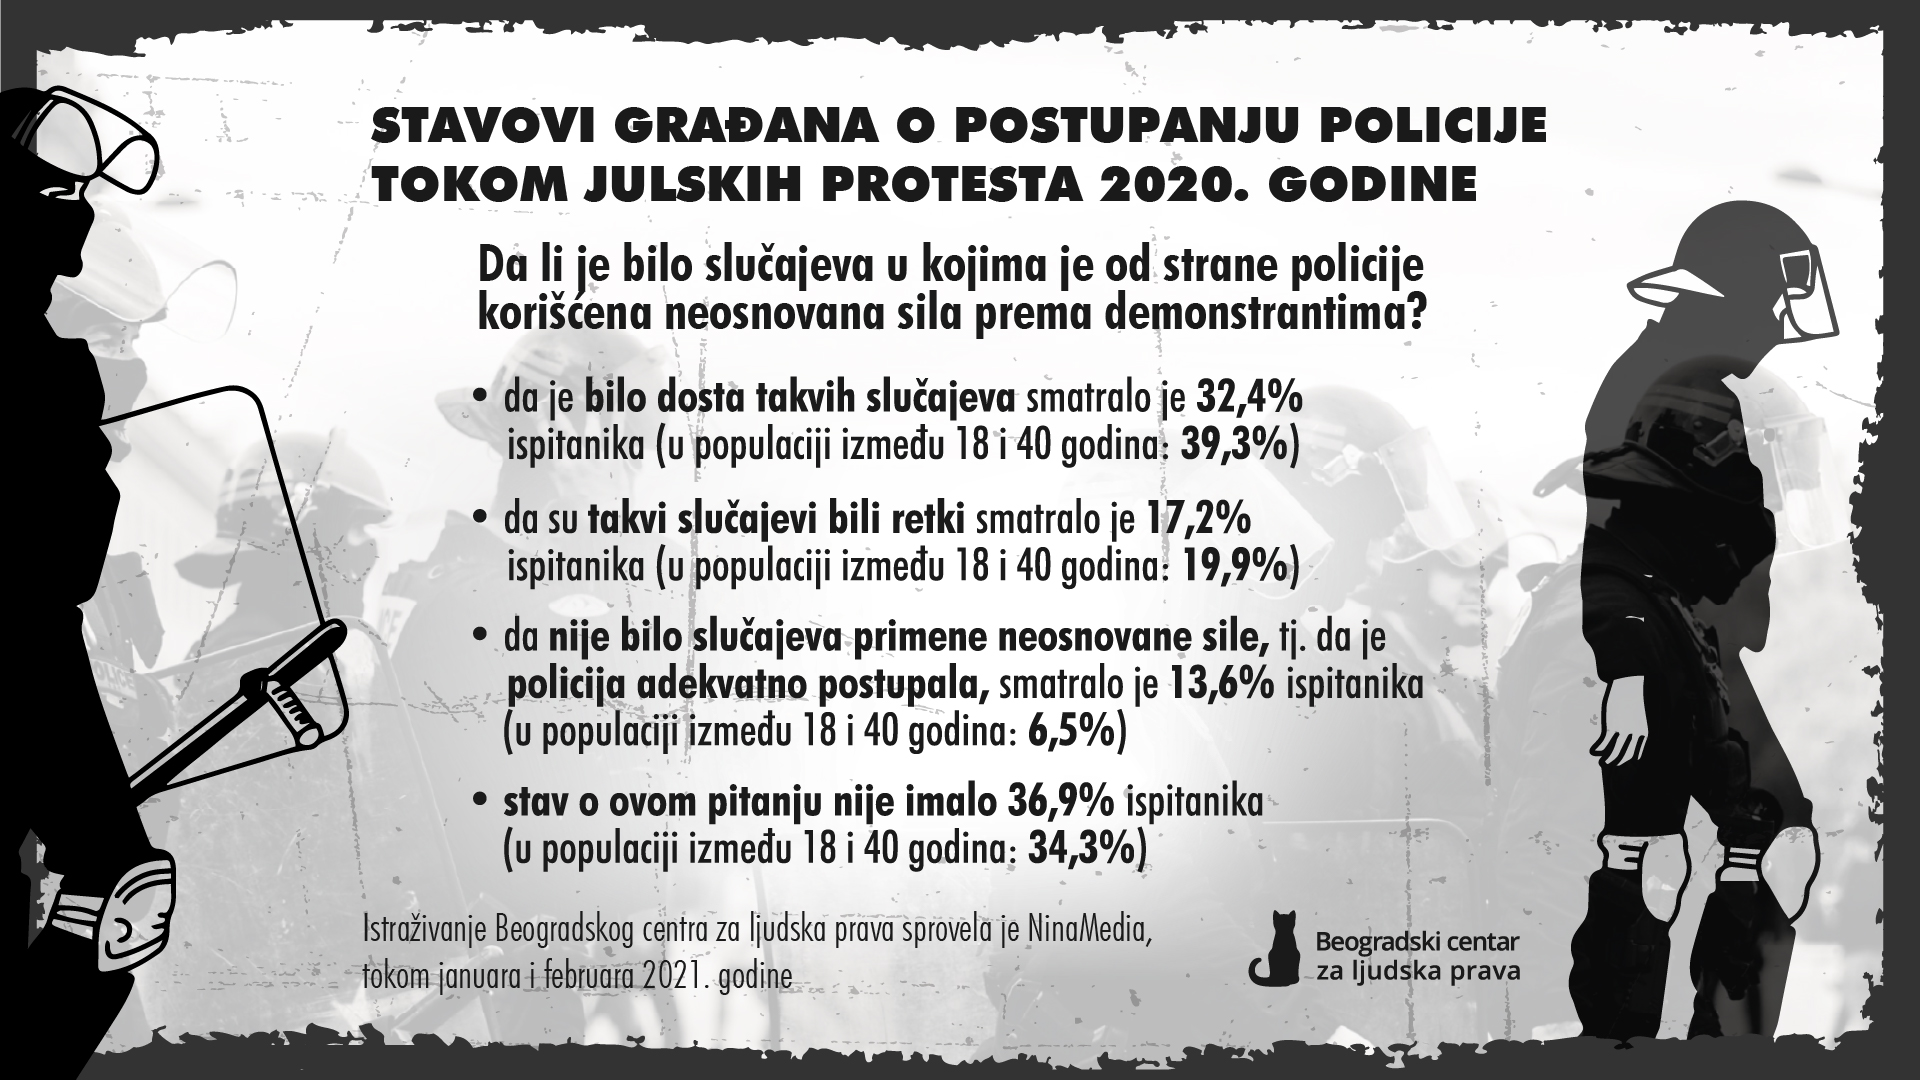 Stavovi građana o postupanju policije tokom julskih protesta 2020. godine u Srbiji